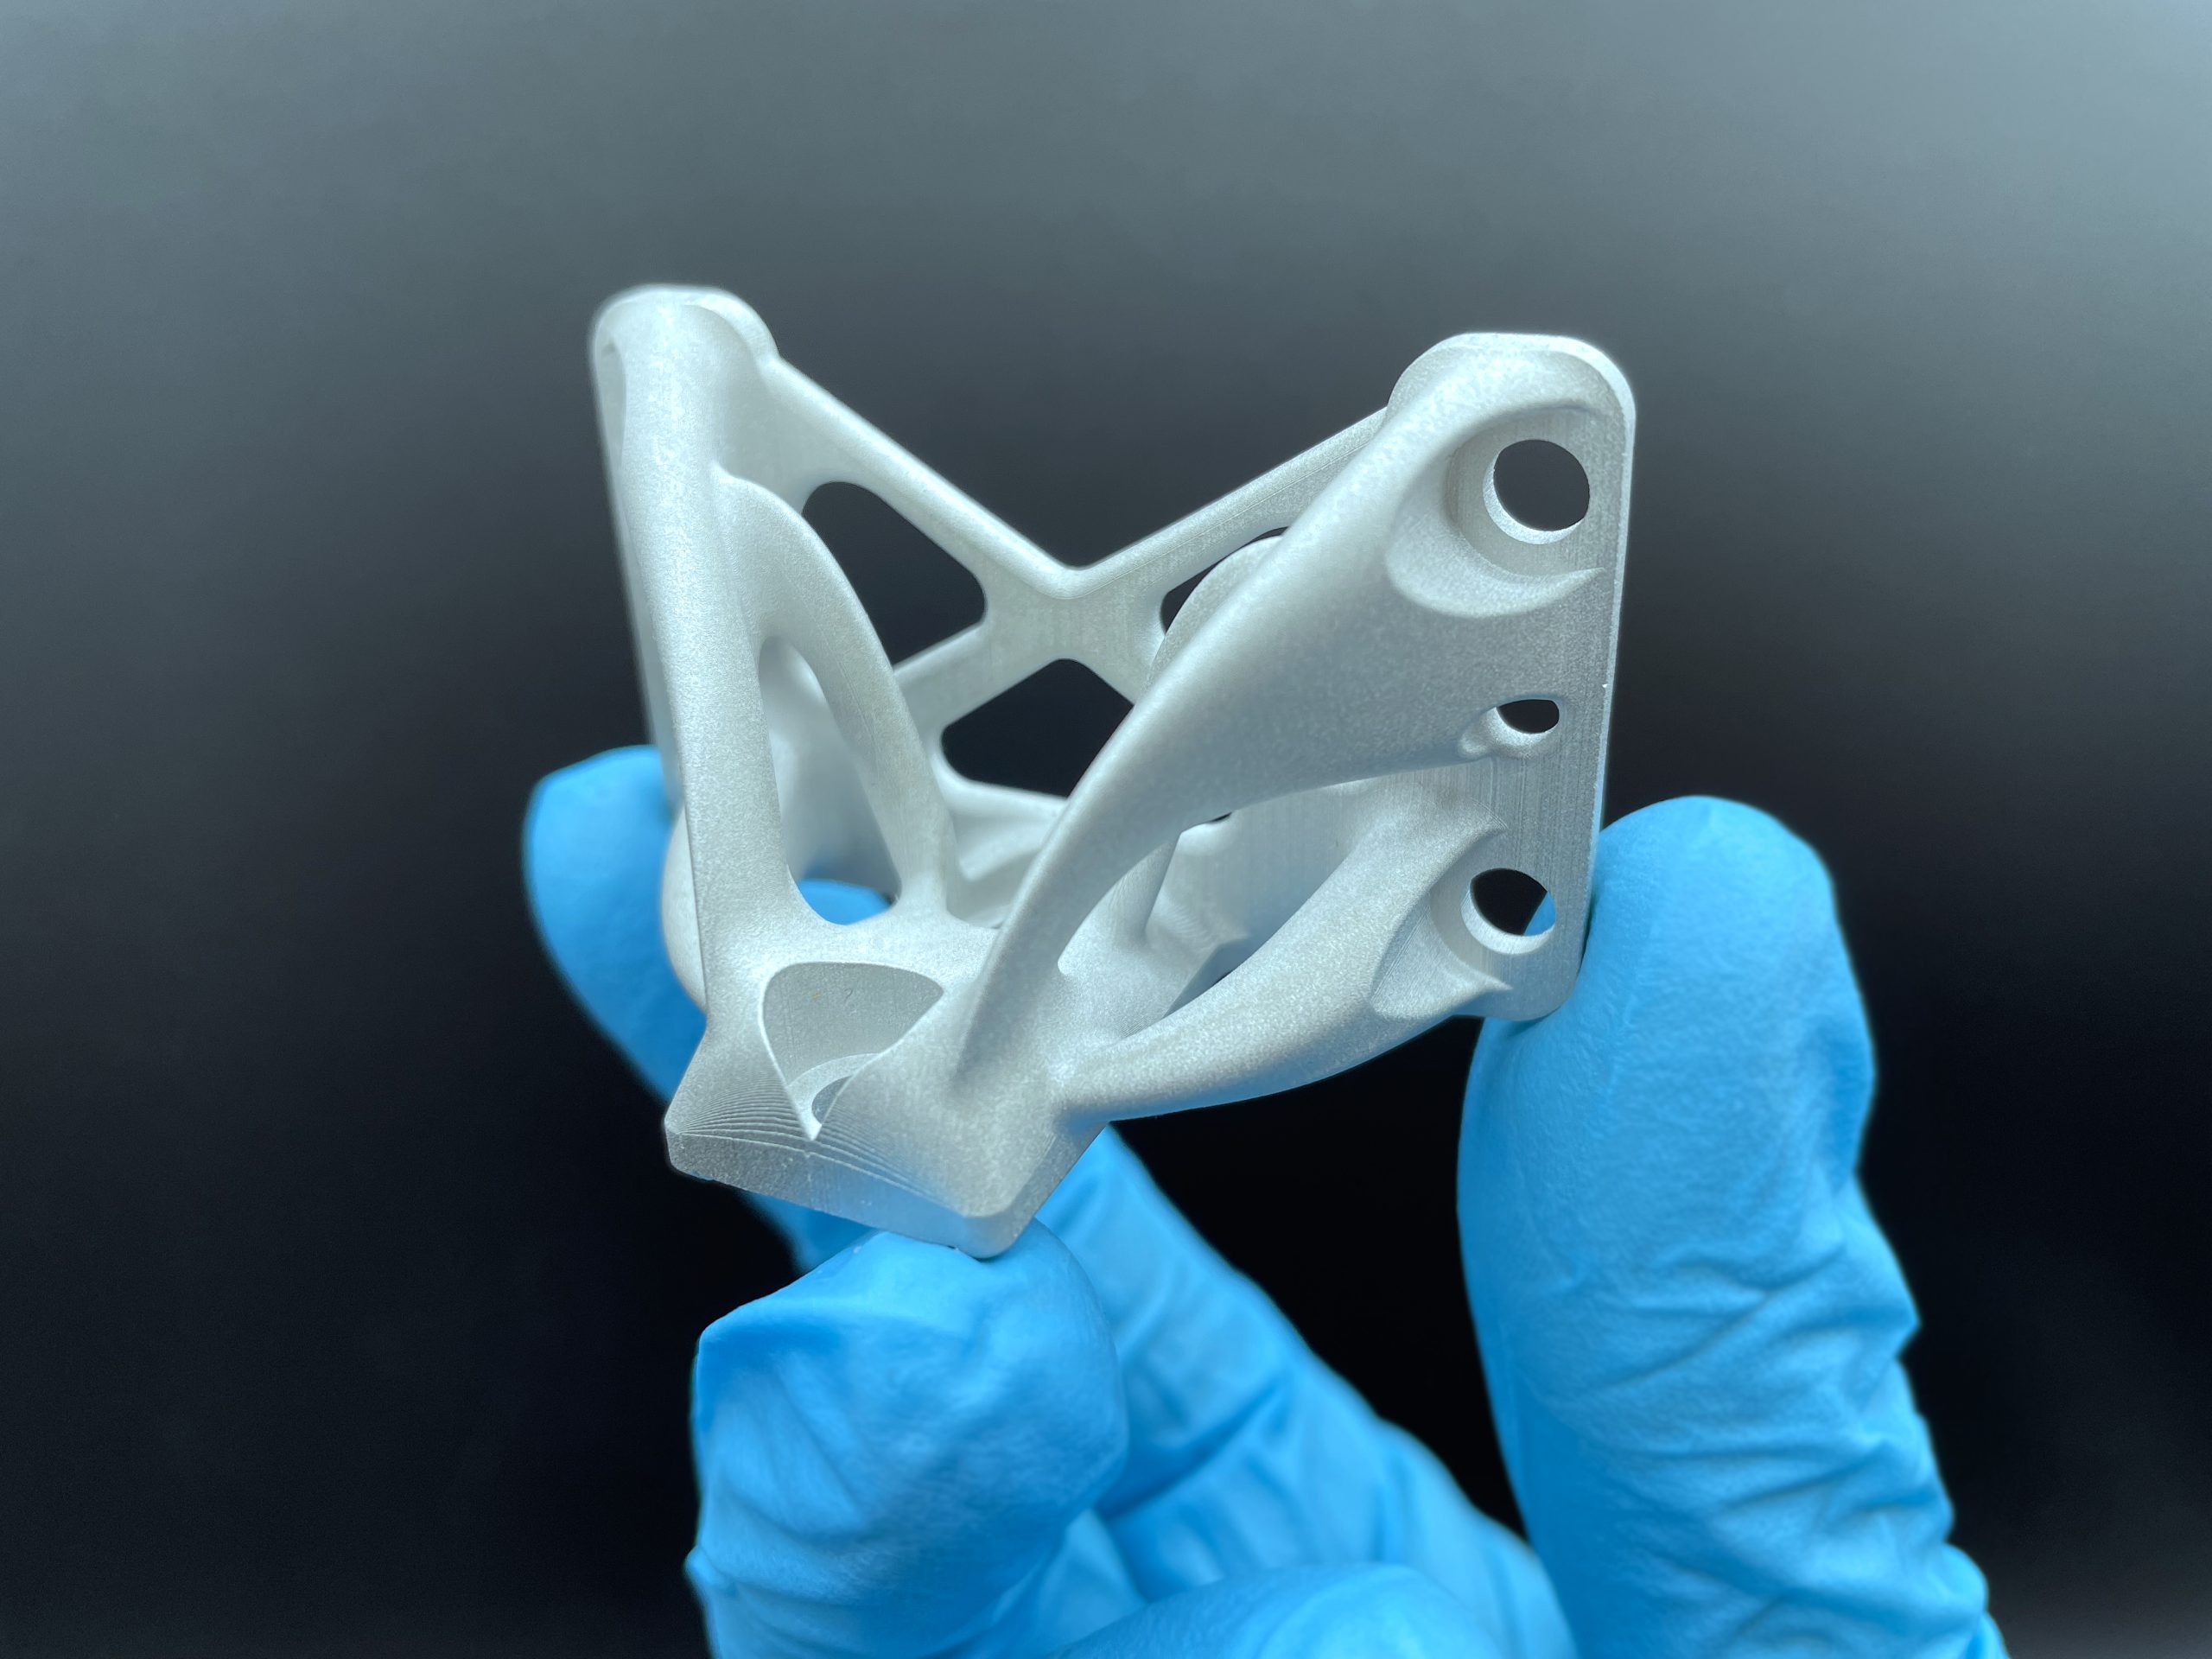 通过LMM工艺生产的3D打印零件。通过砧骨的照片。